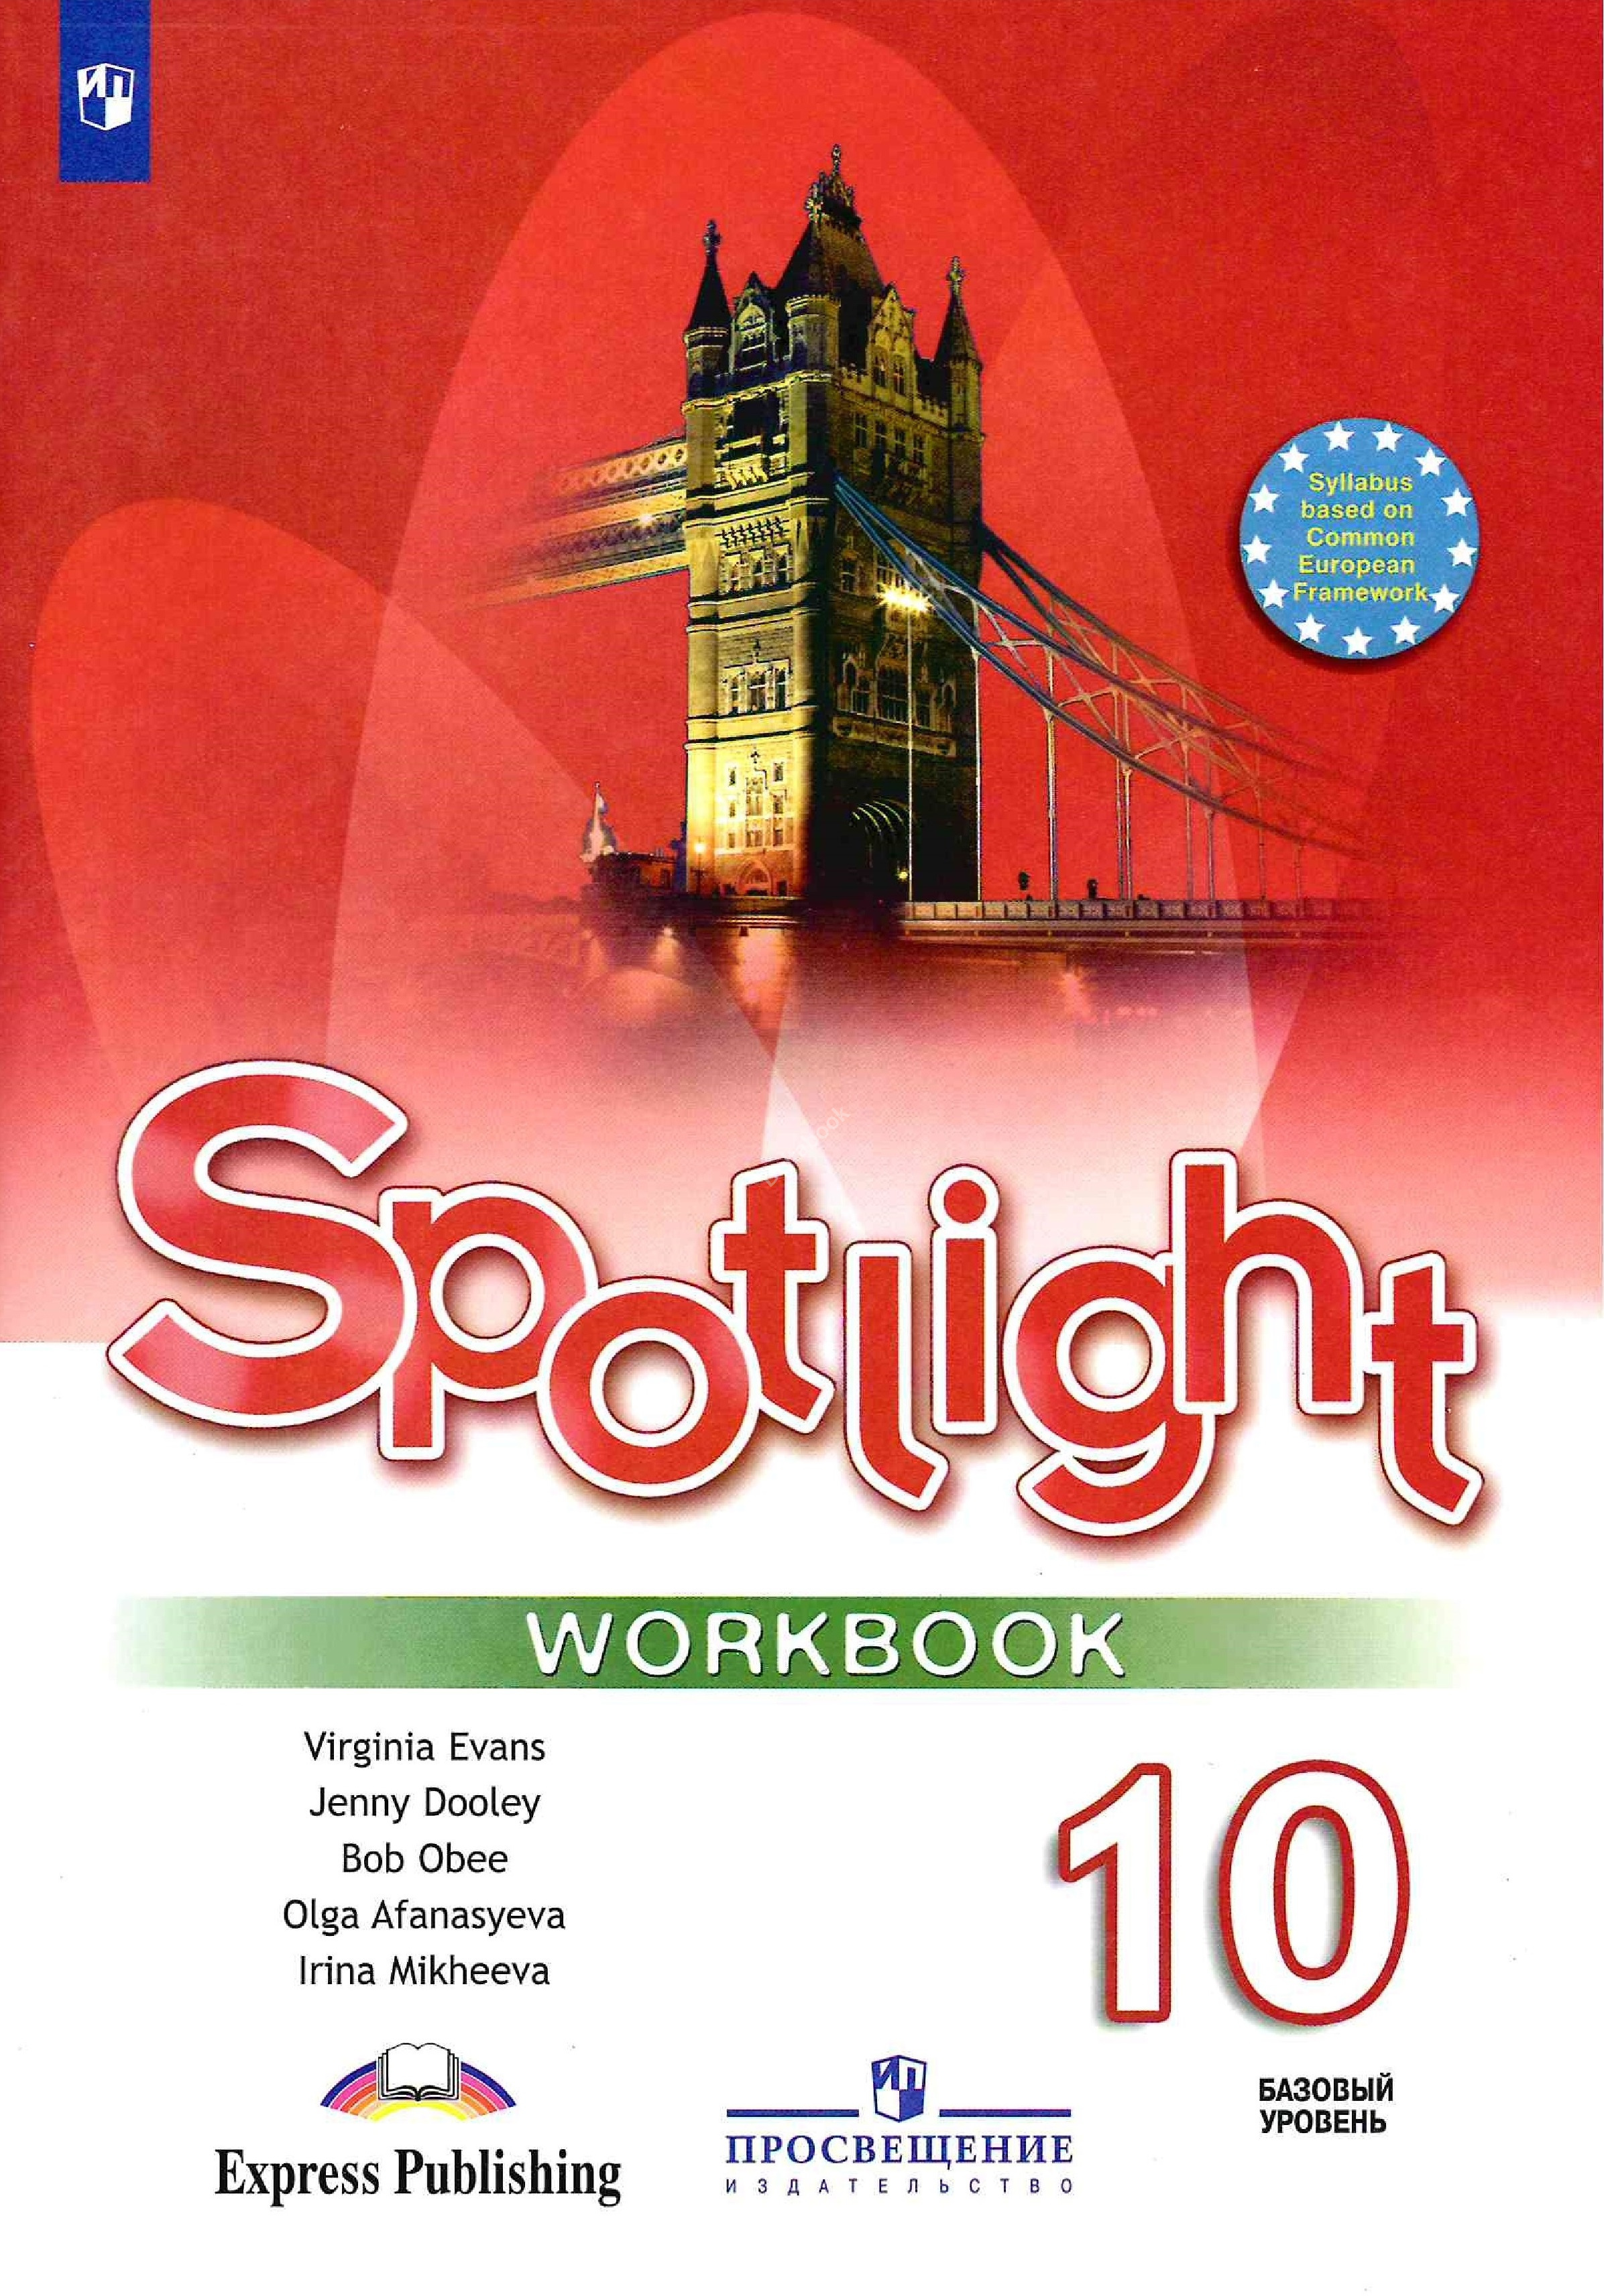 Spotlight 10 workbook английский. Workbook Spotlight 5 класс ваулина. Spotlight 5 Workbook английский язык Эванс. Англ 5 класс рабочая тетрадь Spotlight. Тетради для английского языка 5 класс спотлайт.